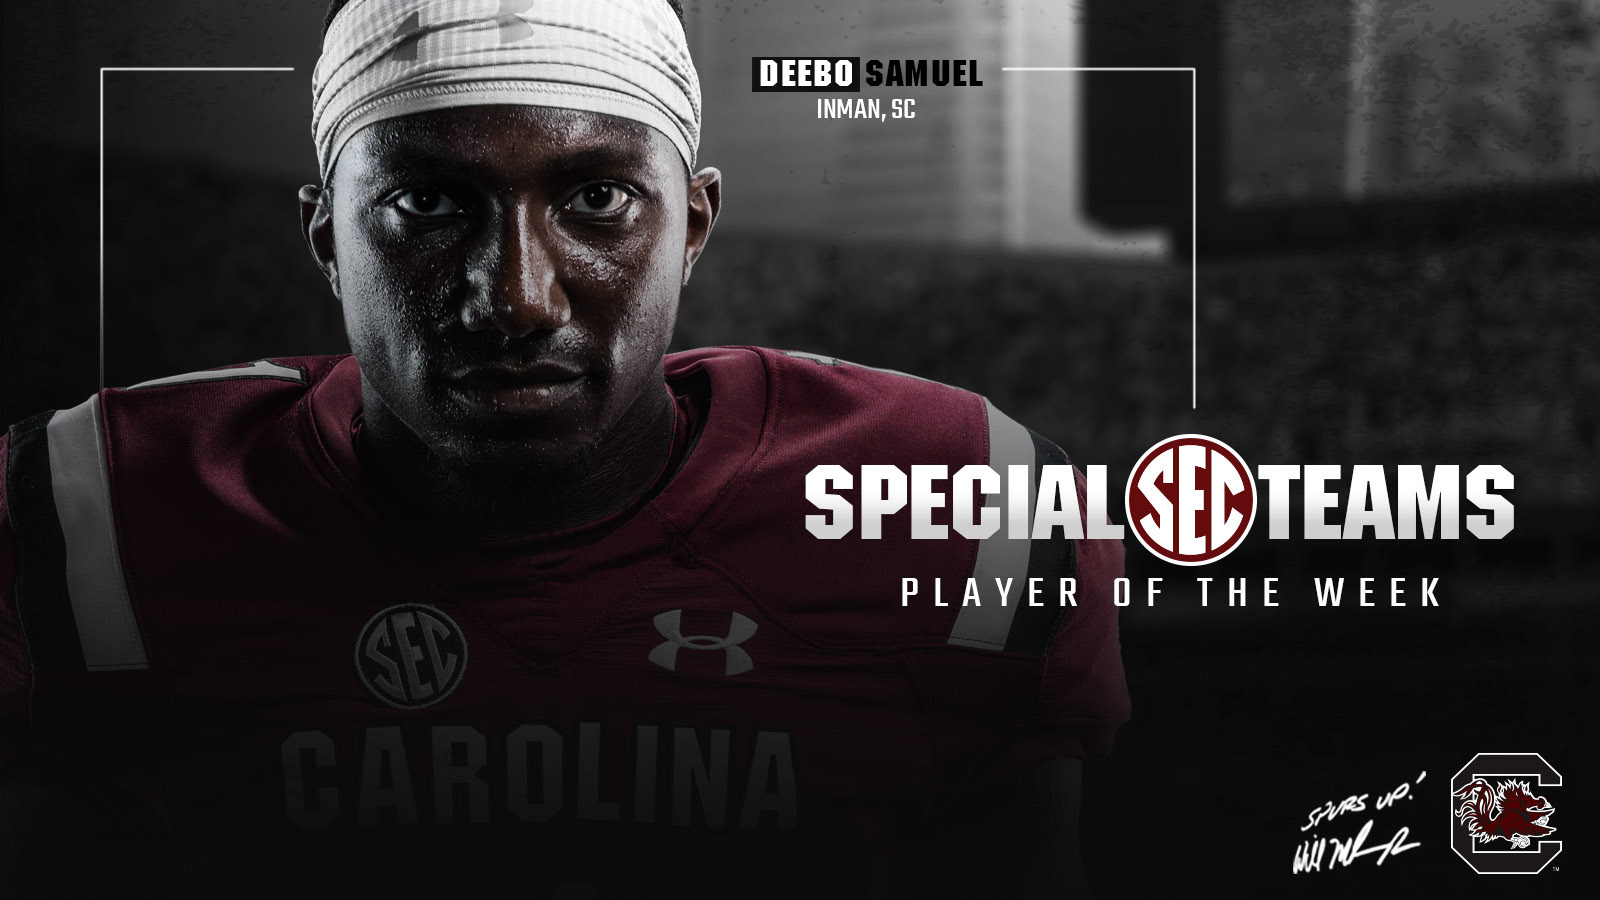 Samuel Named SEC Special Teams Player of the Week